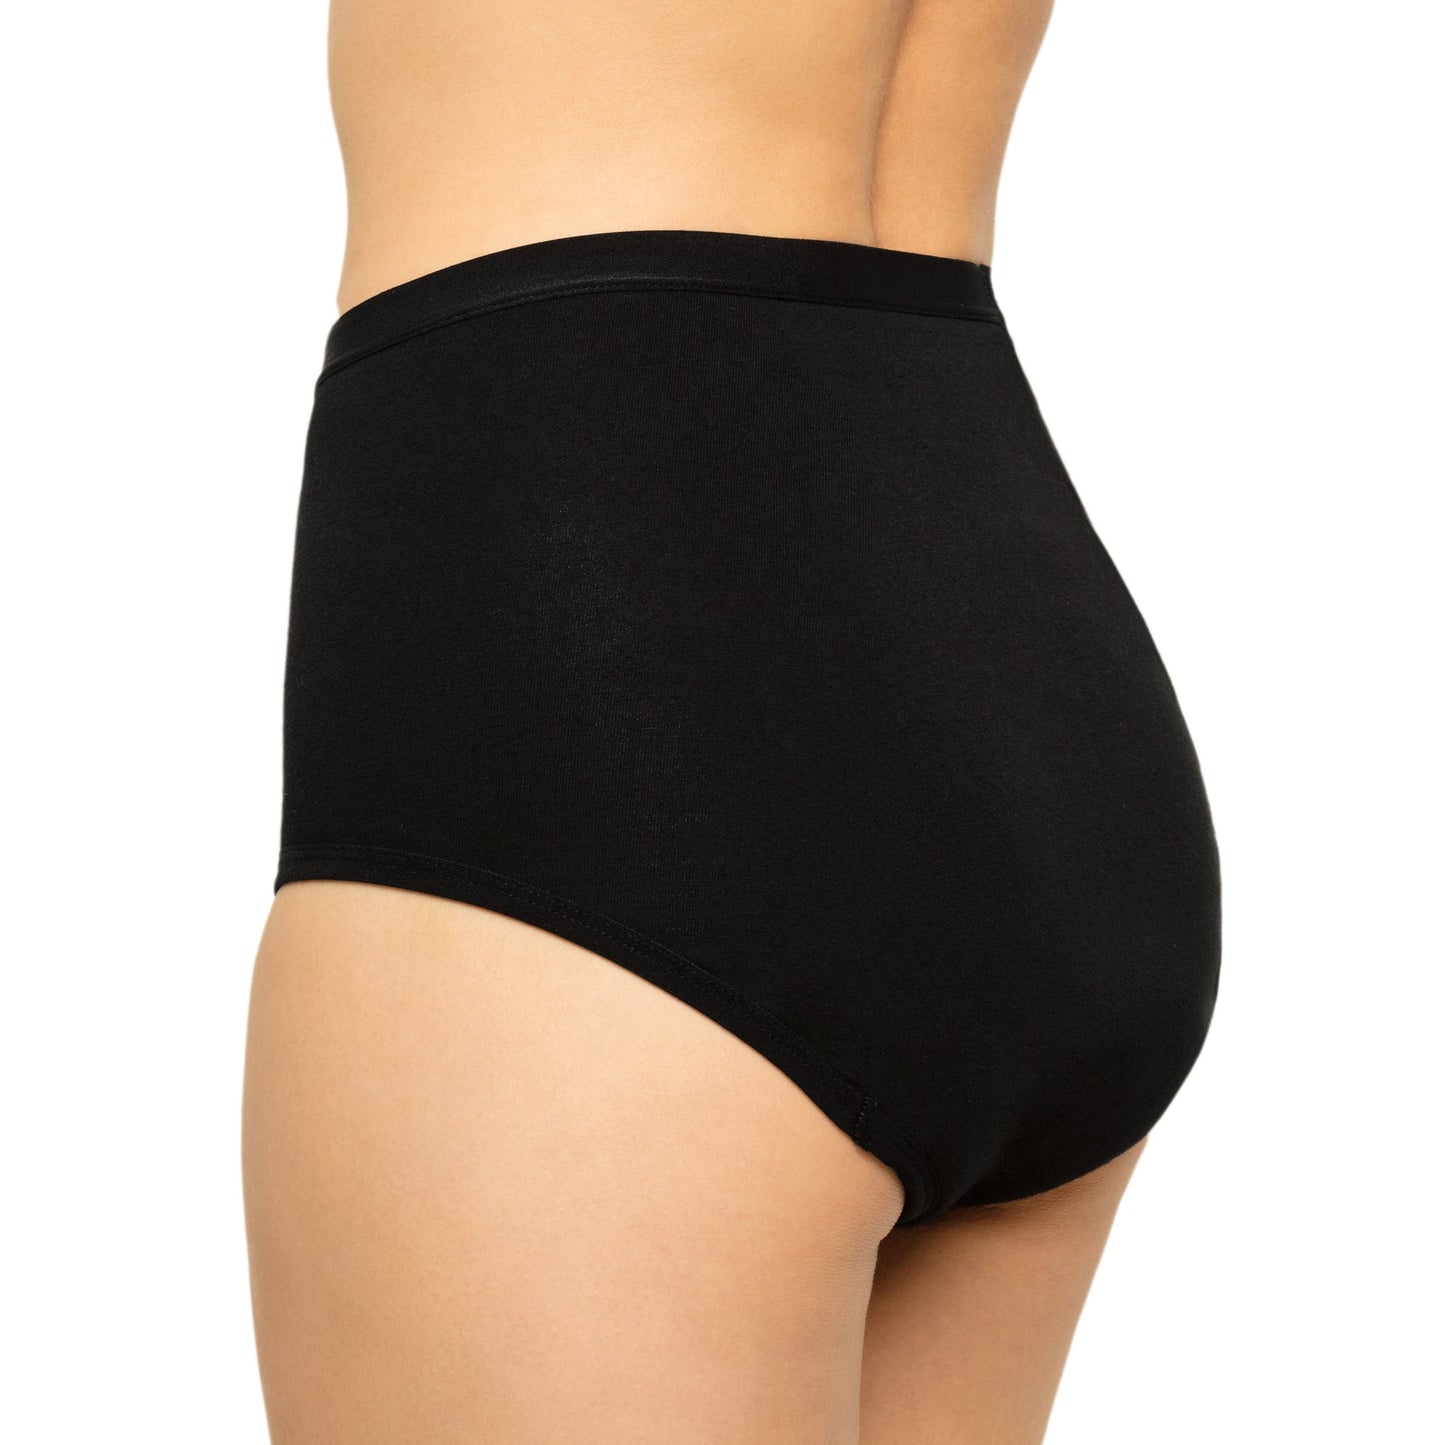 Period Underwear for Women High Waist Leak-Proof Postpartum